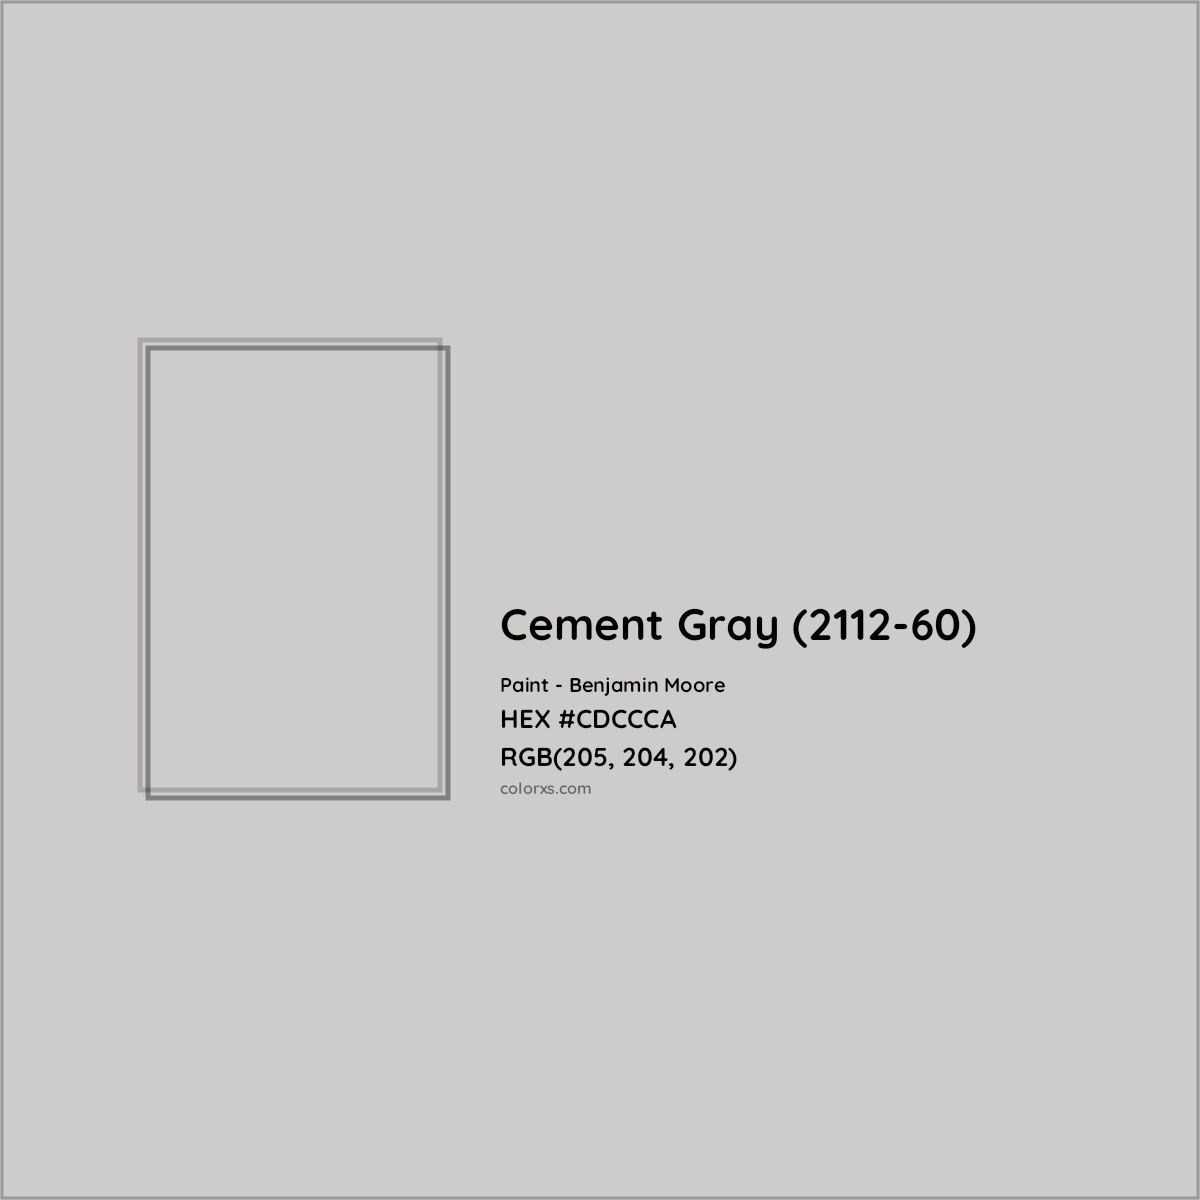 HEX #CDCCCA Cement Gray (2112-60) Paint Benjamin Moore - Color Code